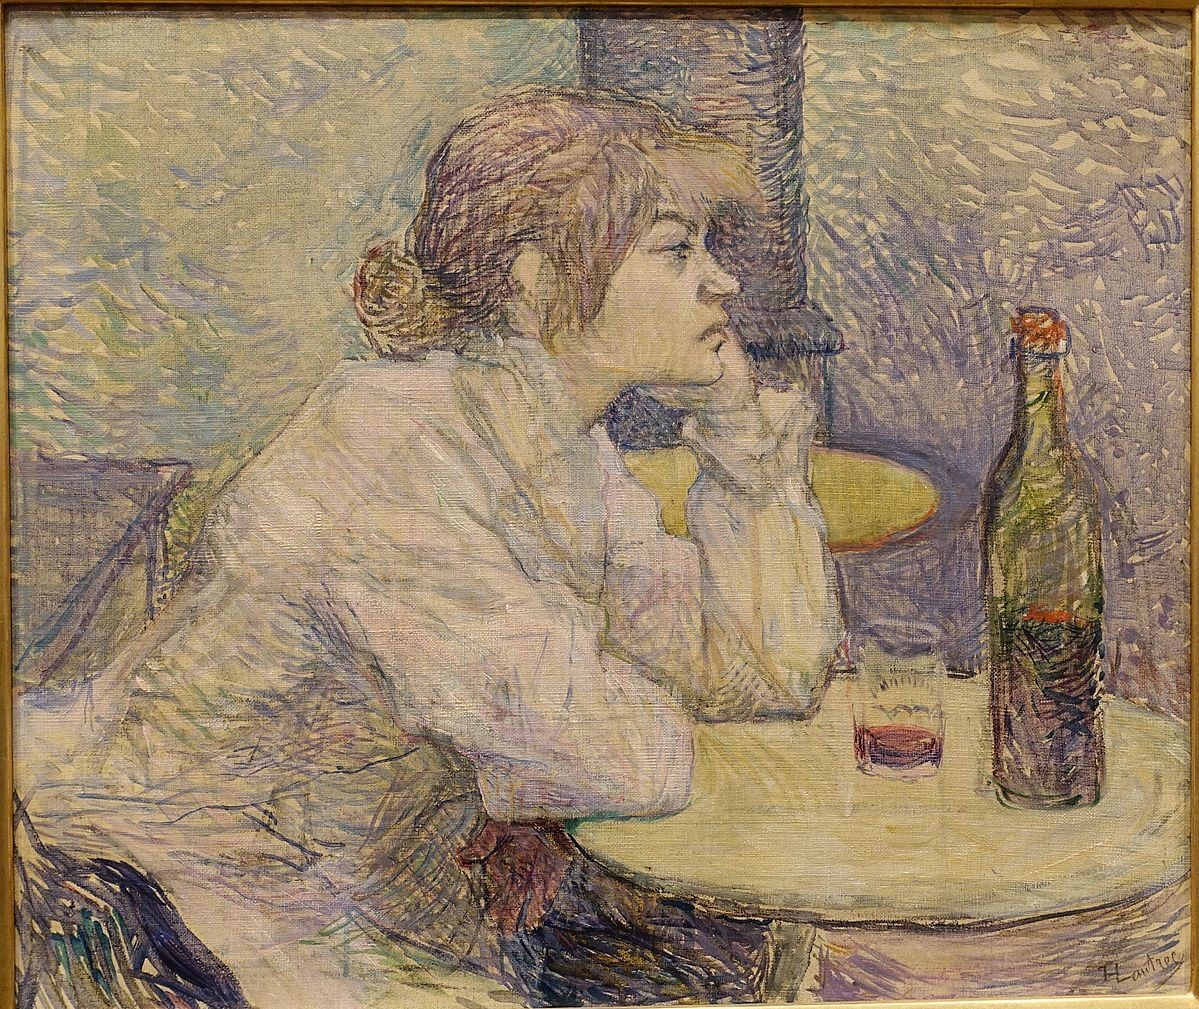 The_Hangover_Suzanne_Valadon_by_Henri_de_Toulouse-Lautrec_1887-1889_oil_on_canvas_-_Fogg_Art_Museum_Harvard_University_-_DSC00697_copy.jpg